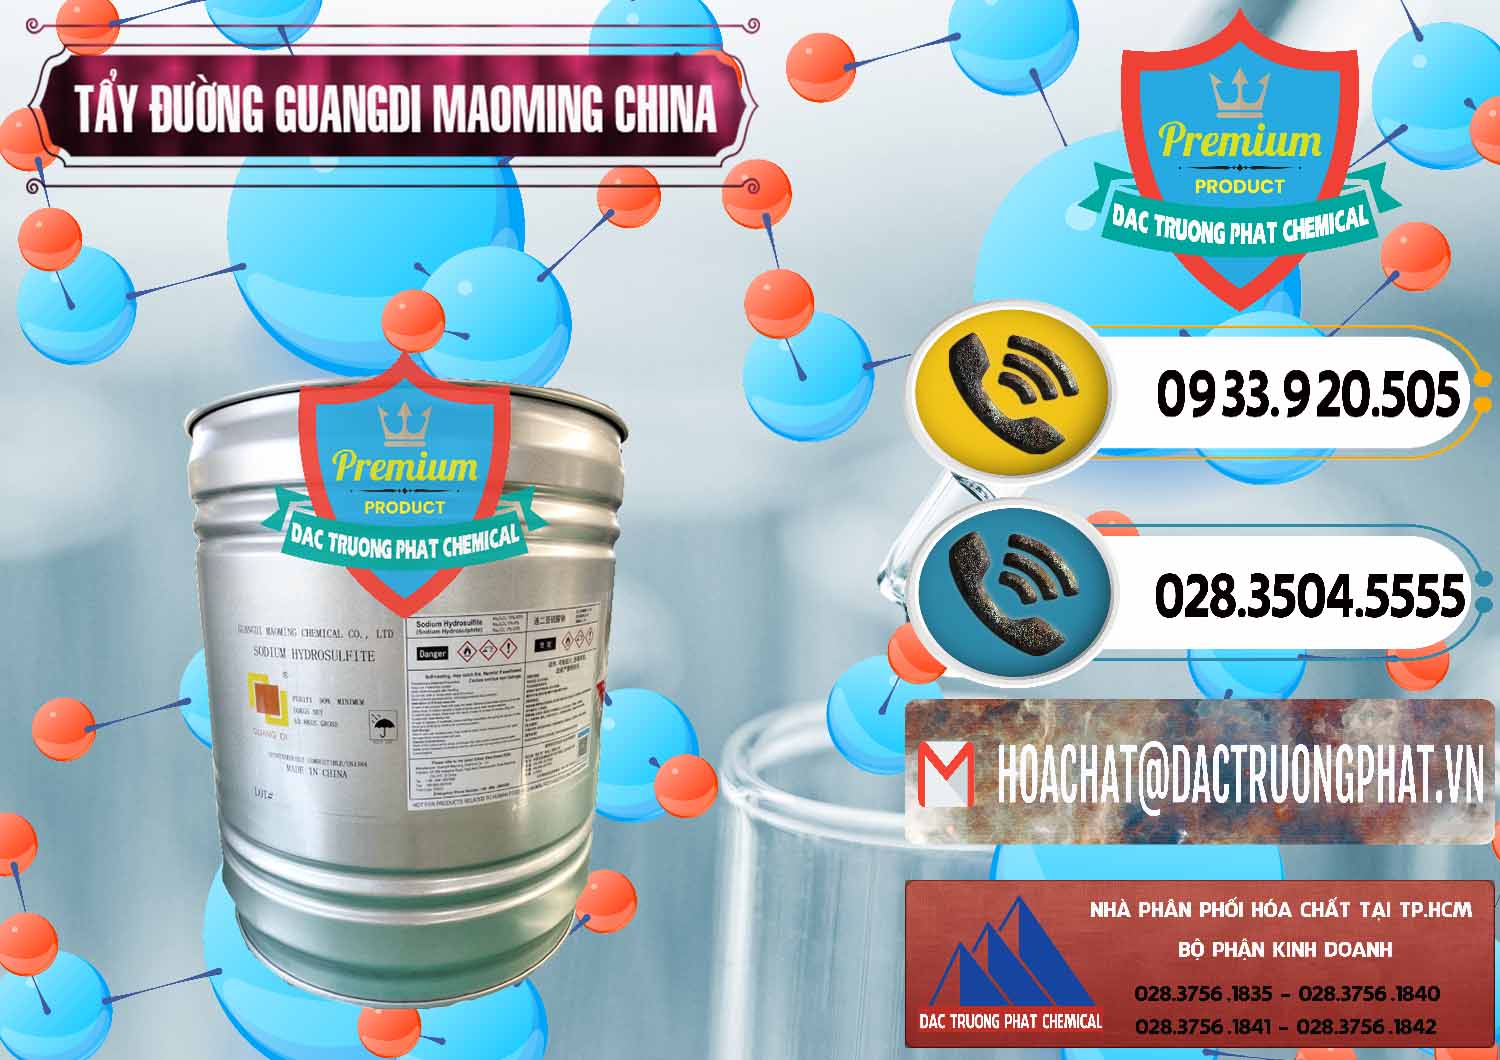 Cung cấp và bán Tẩy Đường - NA2S2O4 Guangdi Maoming Thùng Xám Trung Quốc China - 0402 - Cung cấp & phân phối hóa chất tại TP.HCM - hoachatdetnhuom.vn